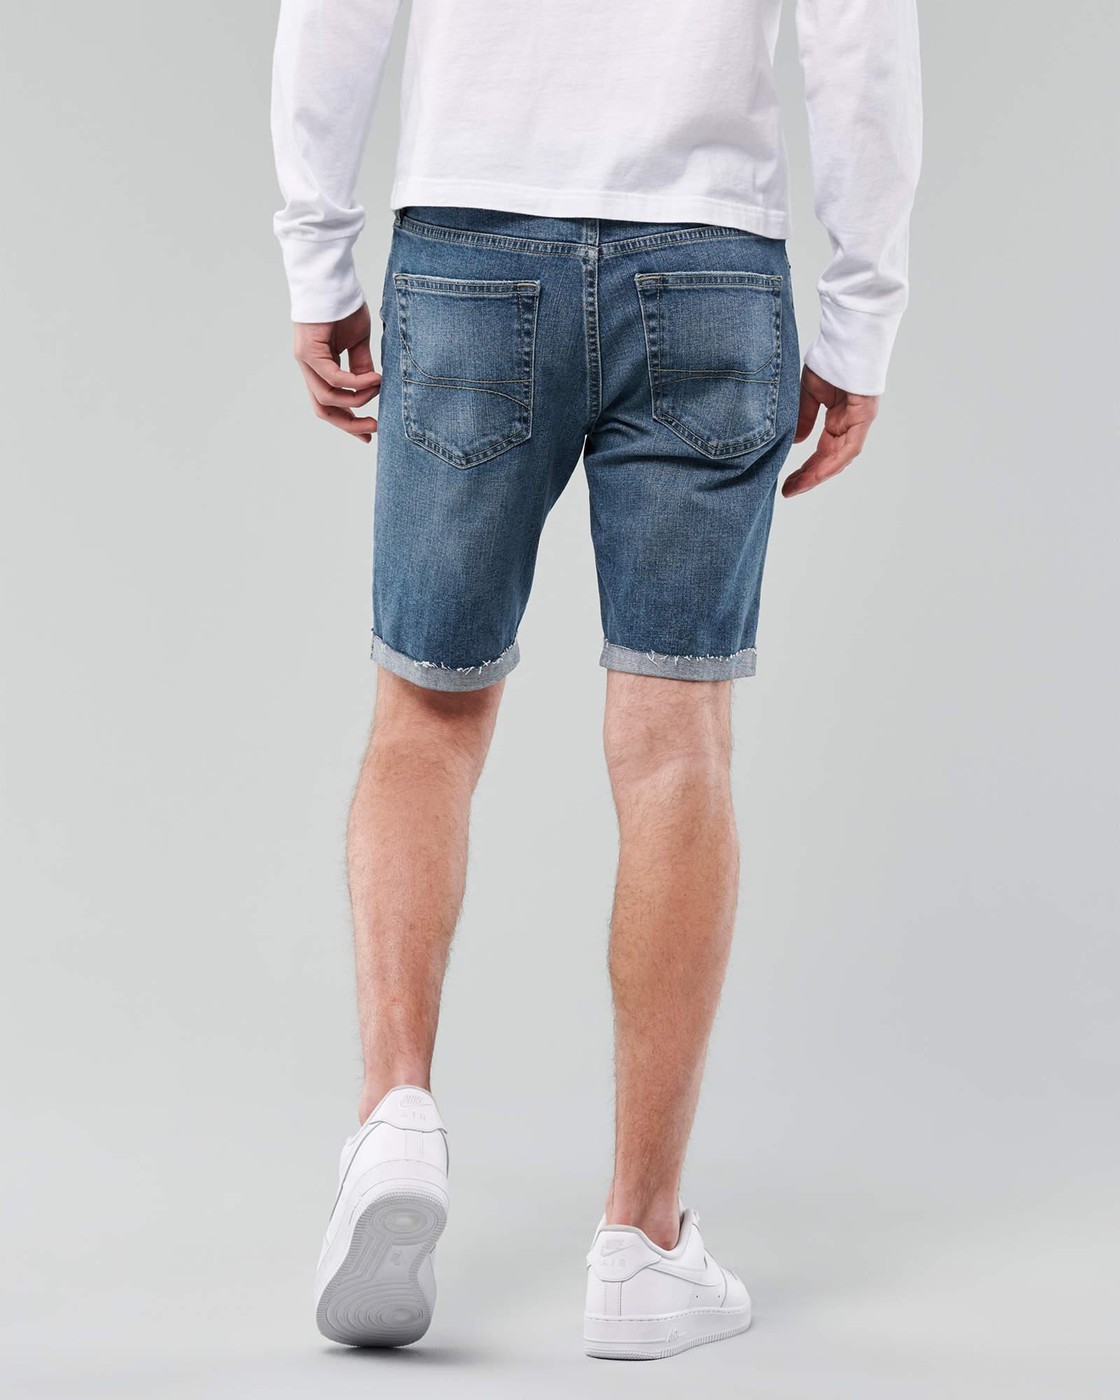 Шорты мужские - джинсовые шорты Hollister, W30, W30